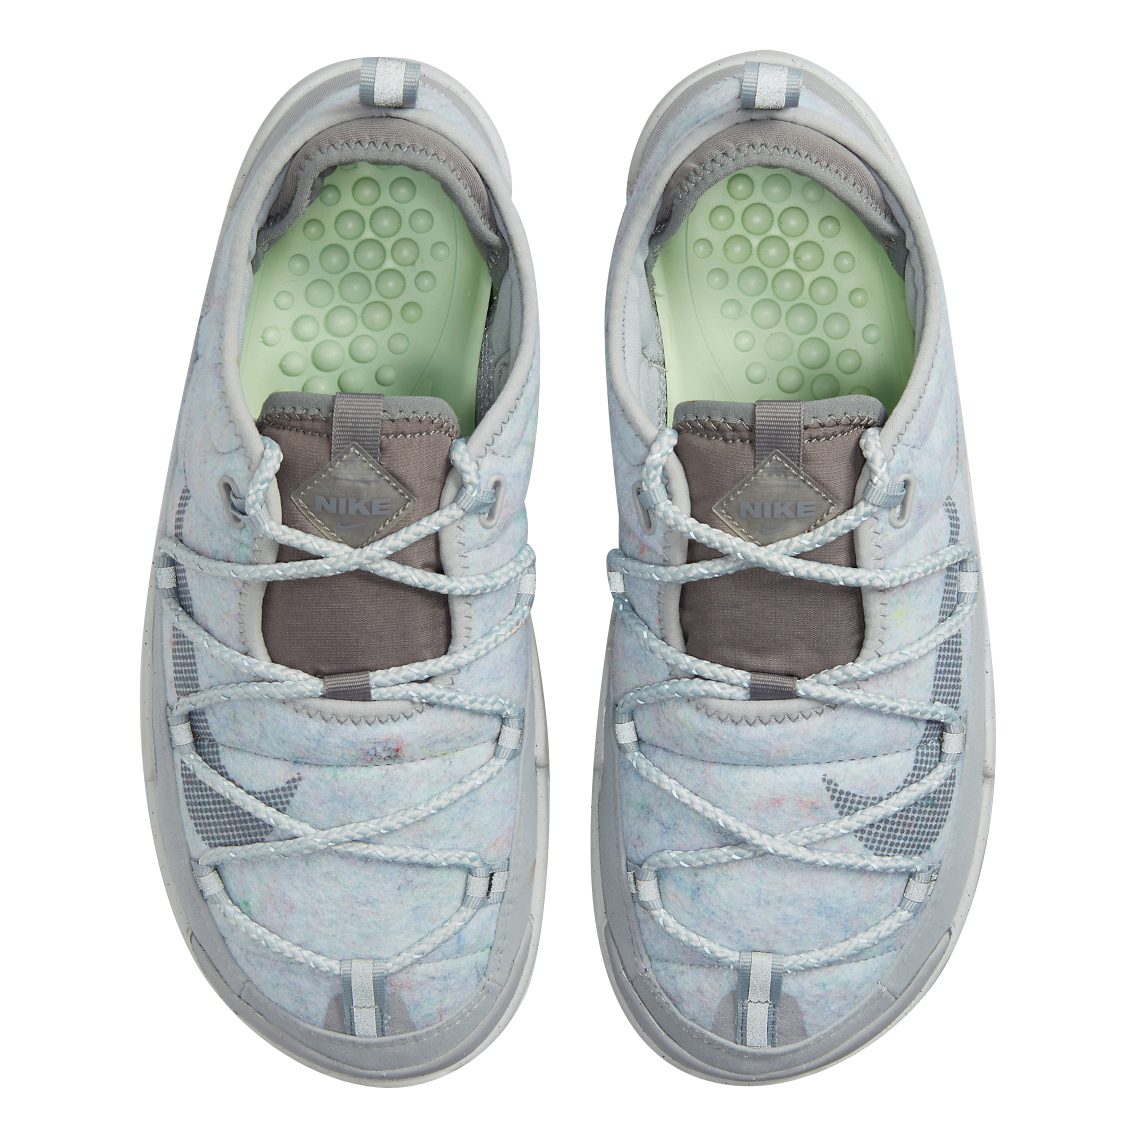 Nike Offline Pack Light Smoke Grey DJ6230-001 - KicksOnFire.com